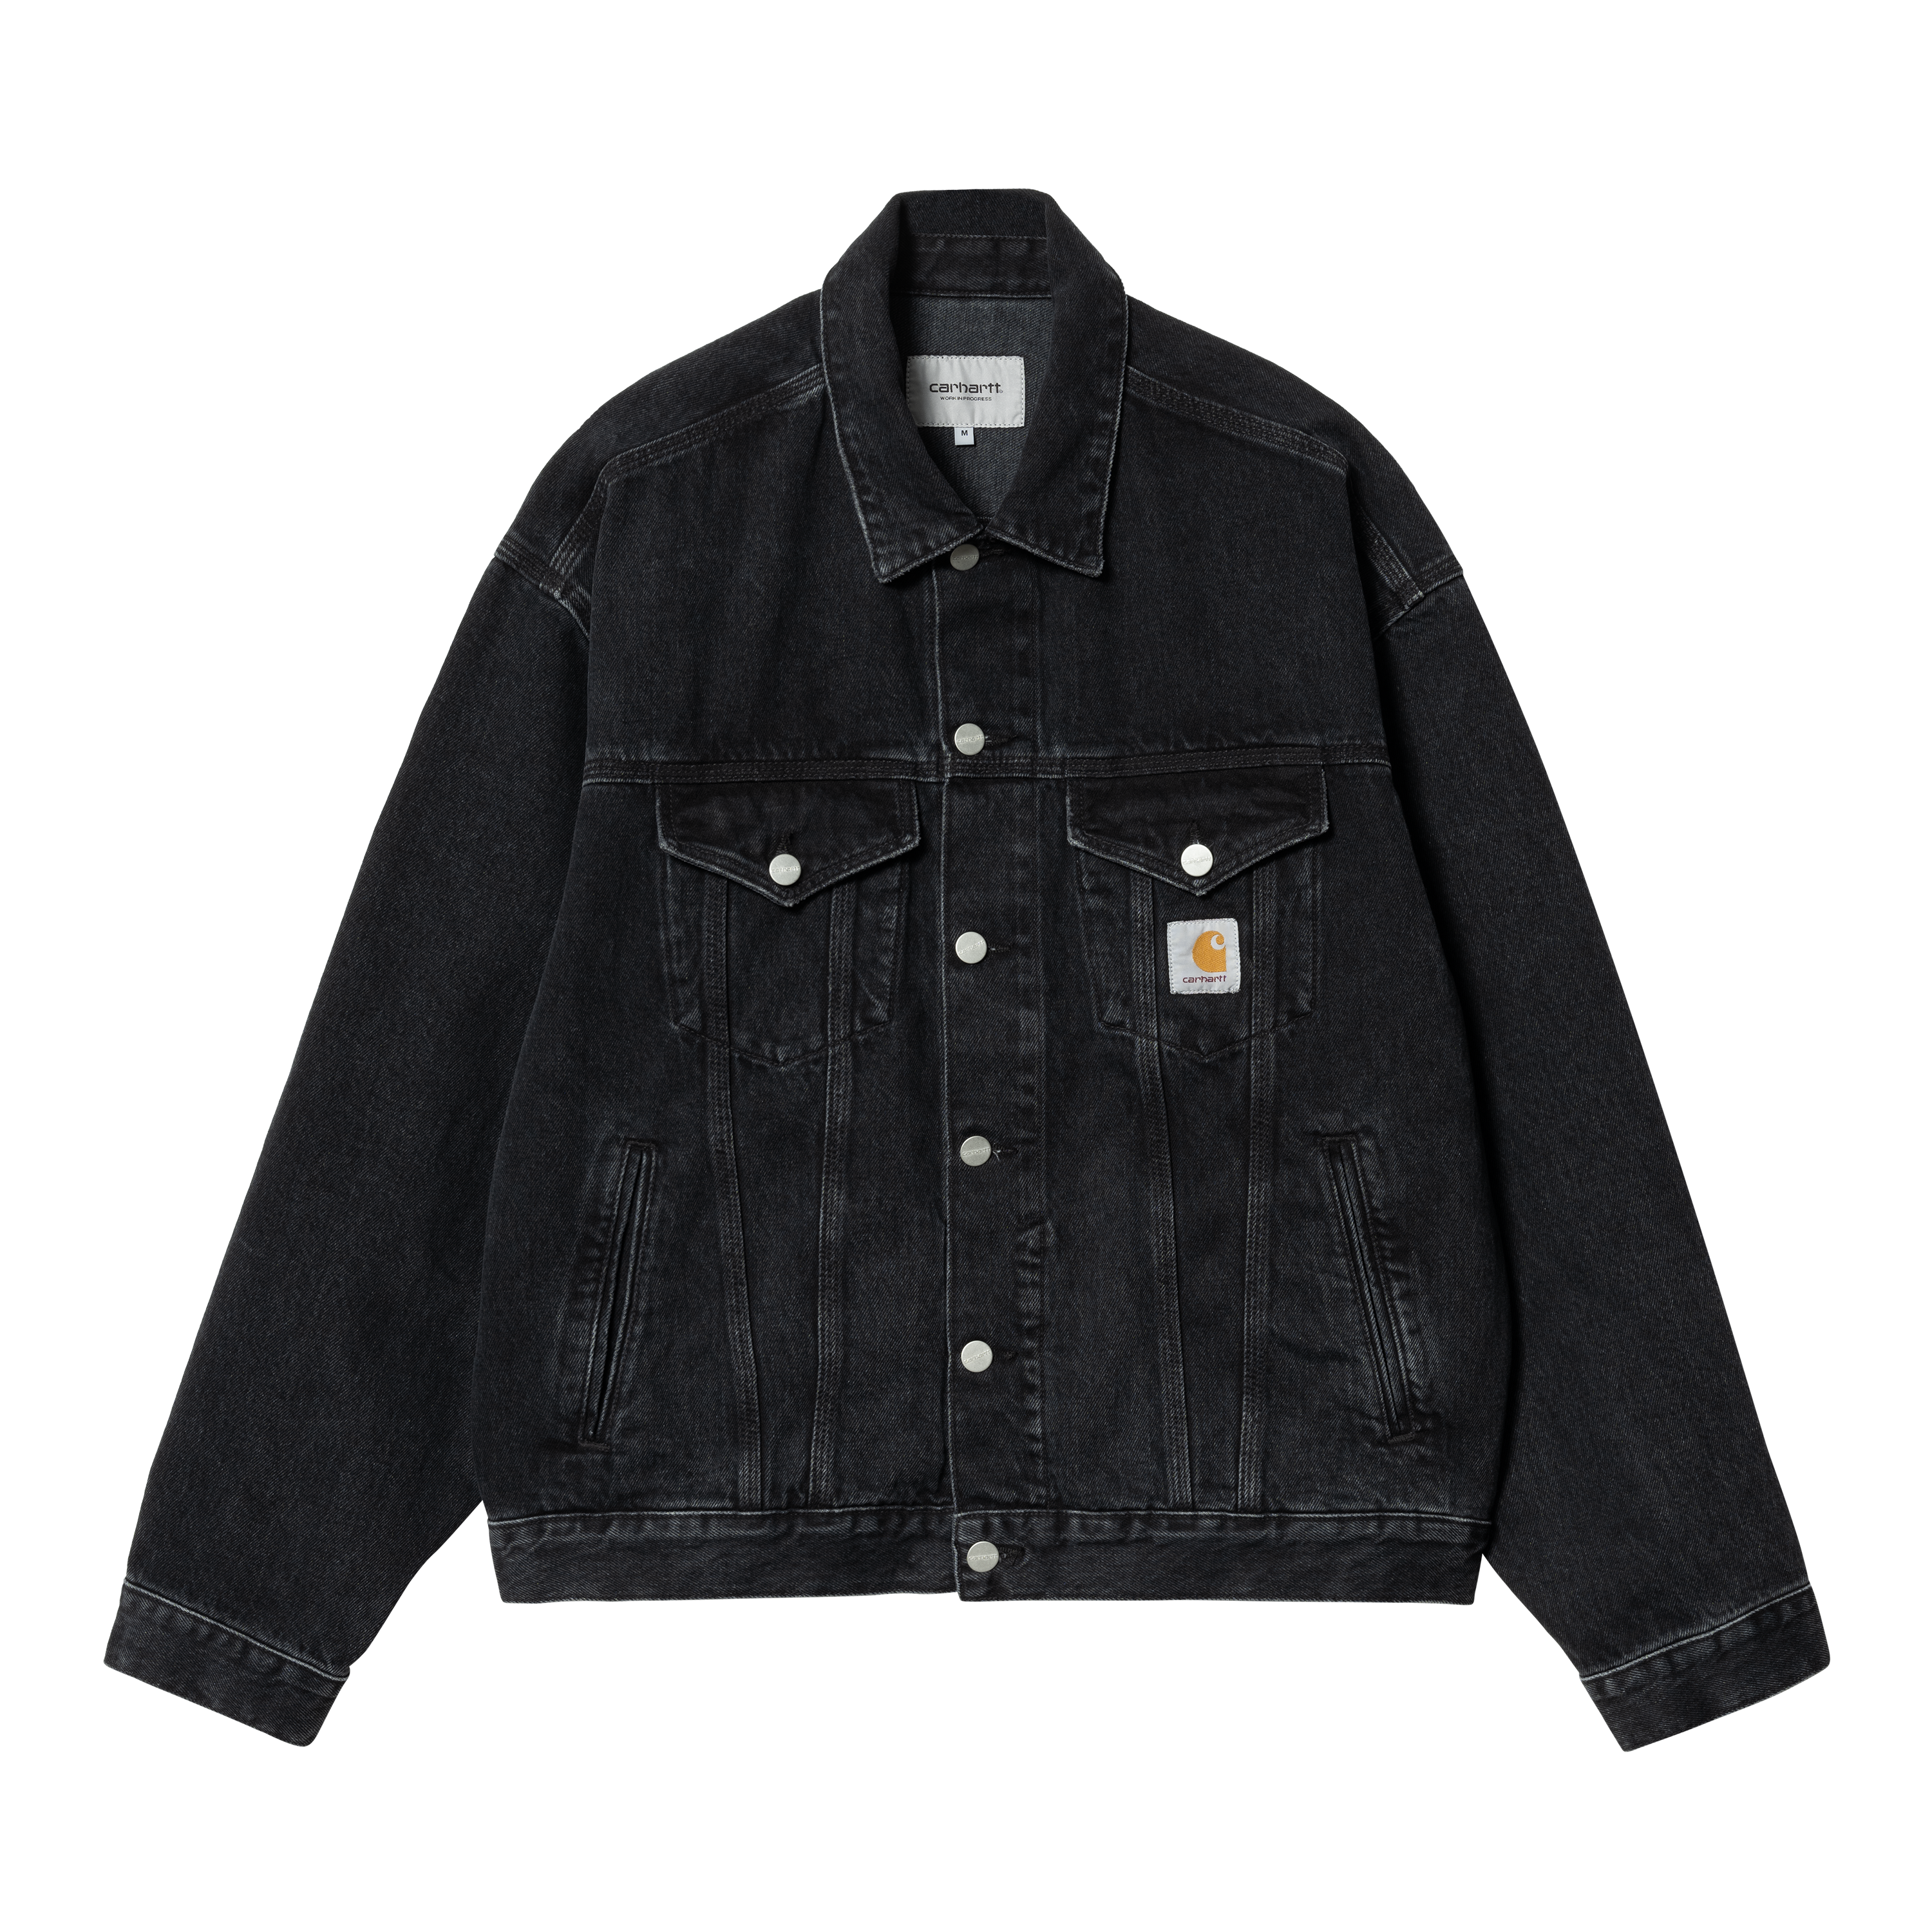 Carhartt WIP Helston Jacket in Black